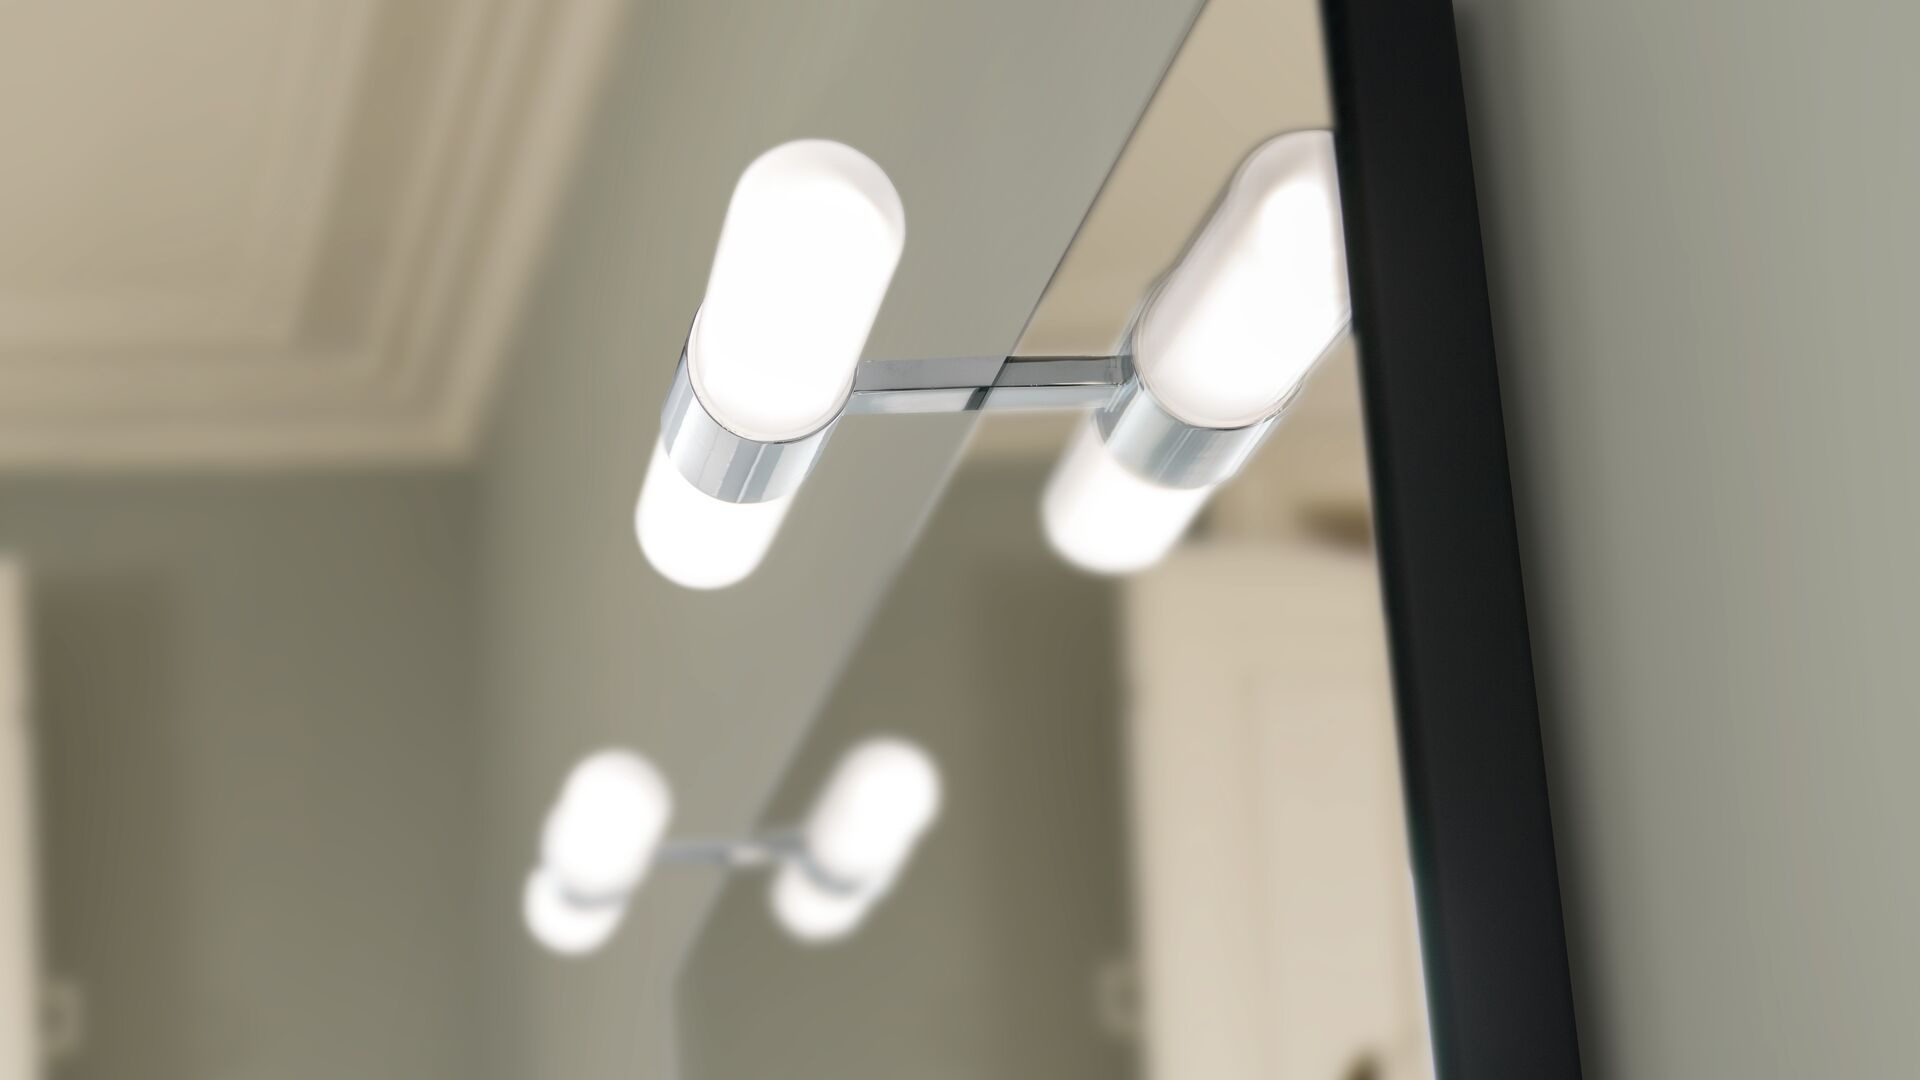 LED Aufsatzleuchte über Spiegel montiert